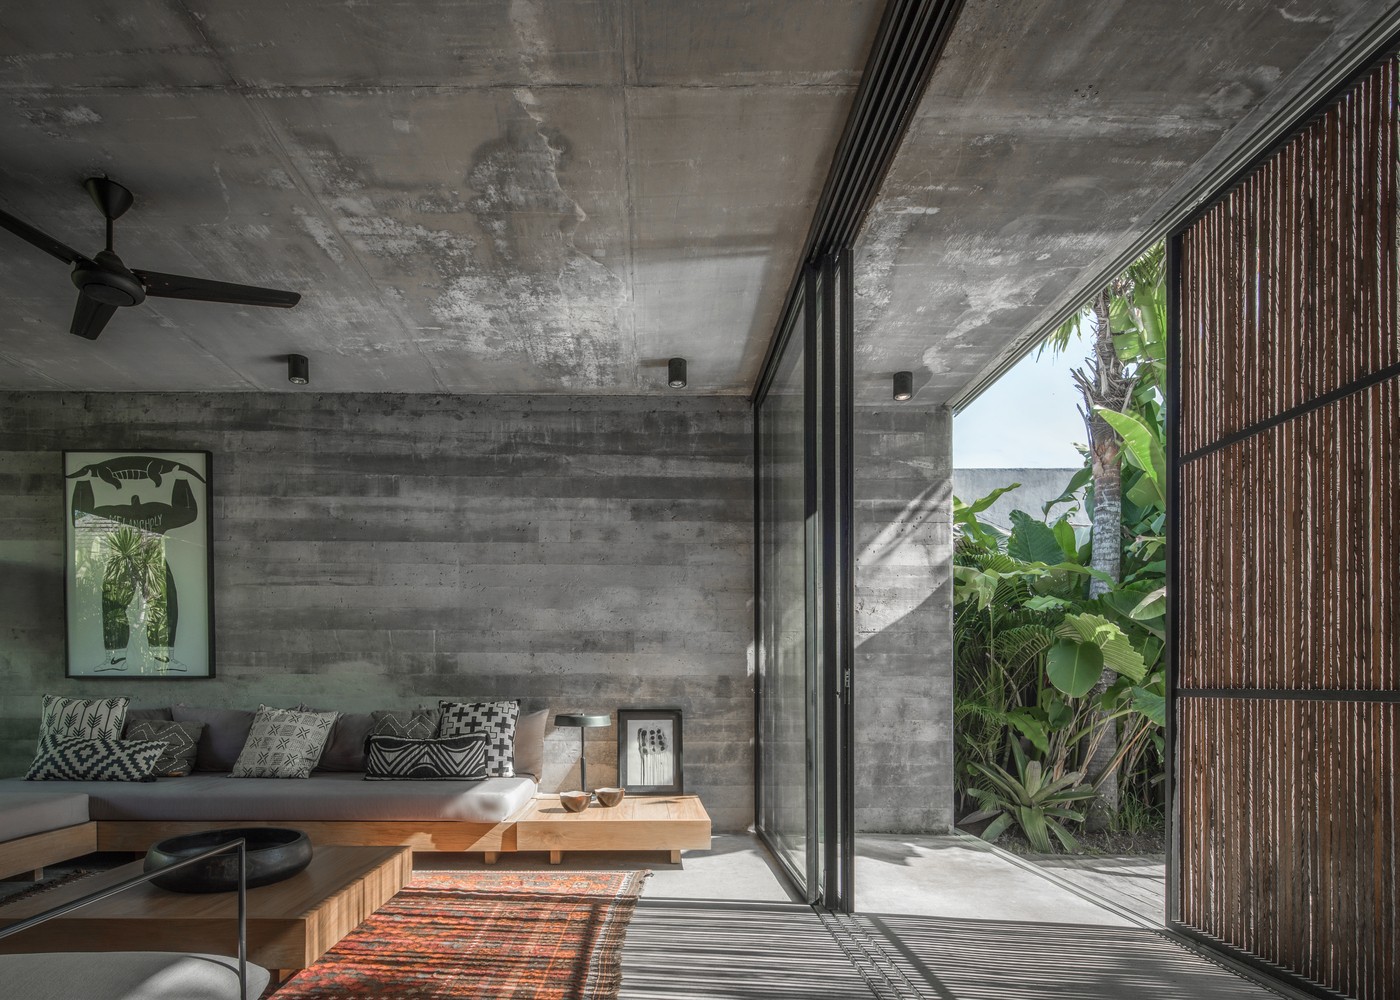 Décor do dia: living integrado com muito concreto e panos de vidro (Foto: KIE)